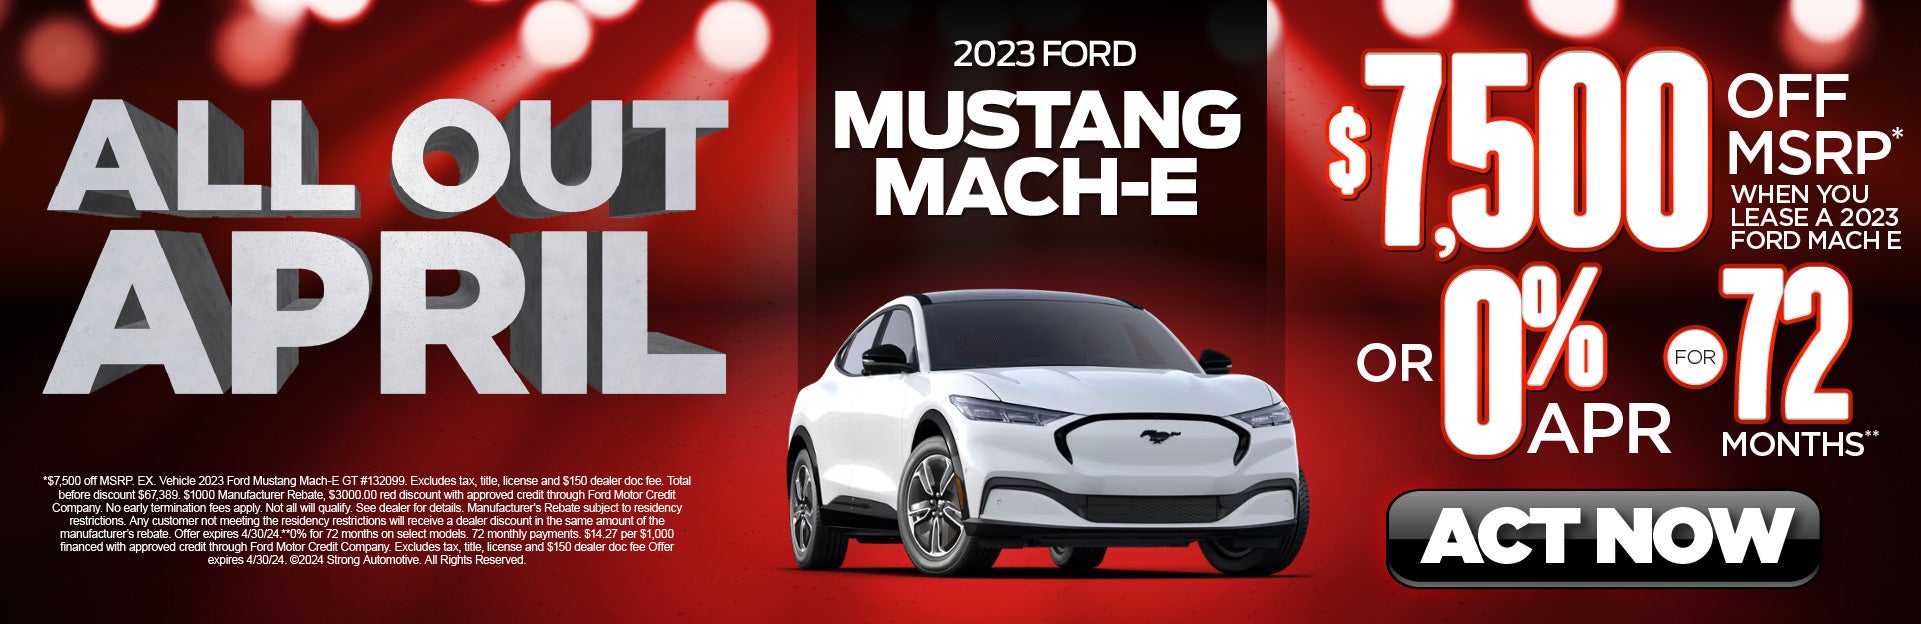 2023 Mustang Mach-E $7,500 off MSRP*